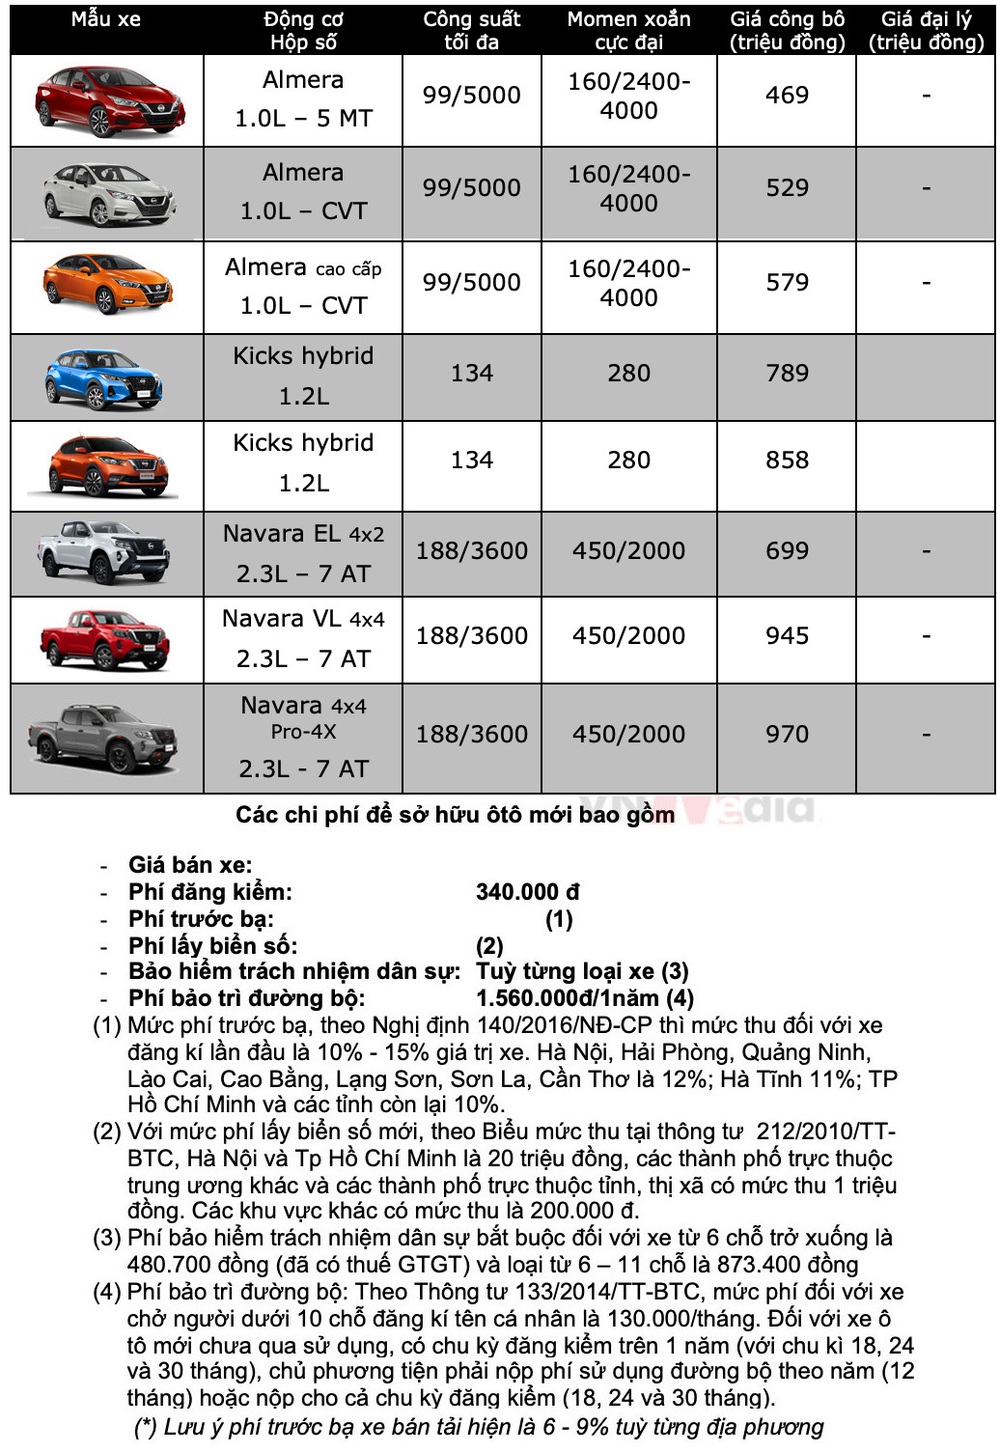 Bảng giá xe Nissan tháng 1: Nissan Almera được giảm 100% lệ phí trước bạ từ nhà phân phối - Ảnh 2.